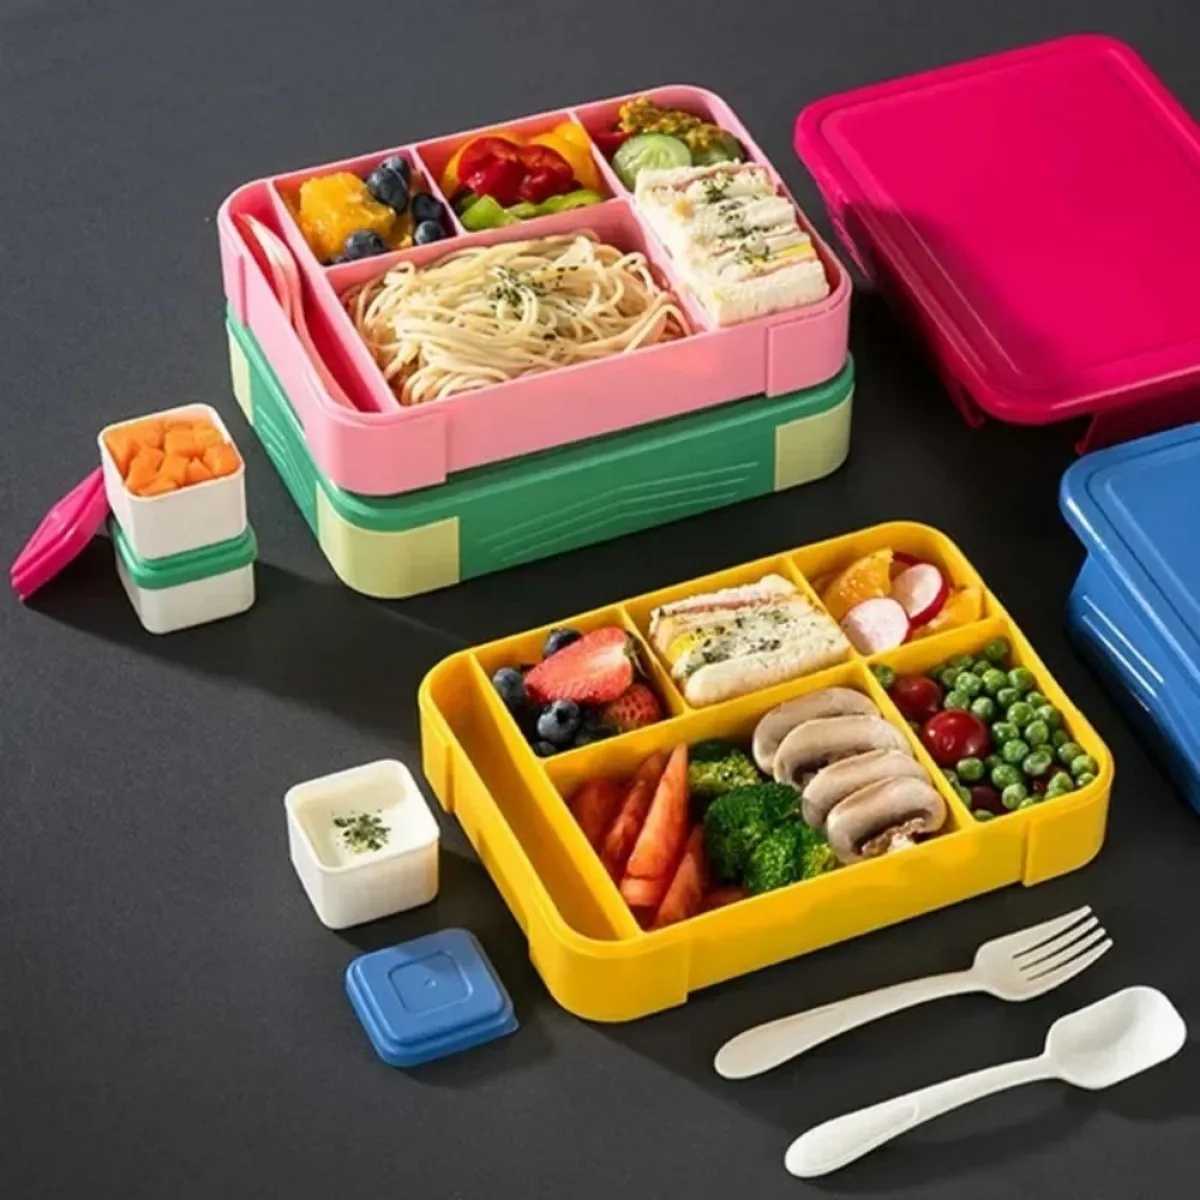 Lunchlådor Väskor Barn och studenter 1330 ml Läcksäker lunchlådor förseglade i fack Fruktlådor Salladlådor Mikrovågsvärme Bento Box